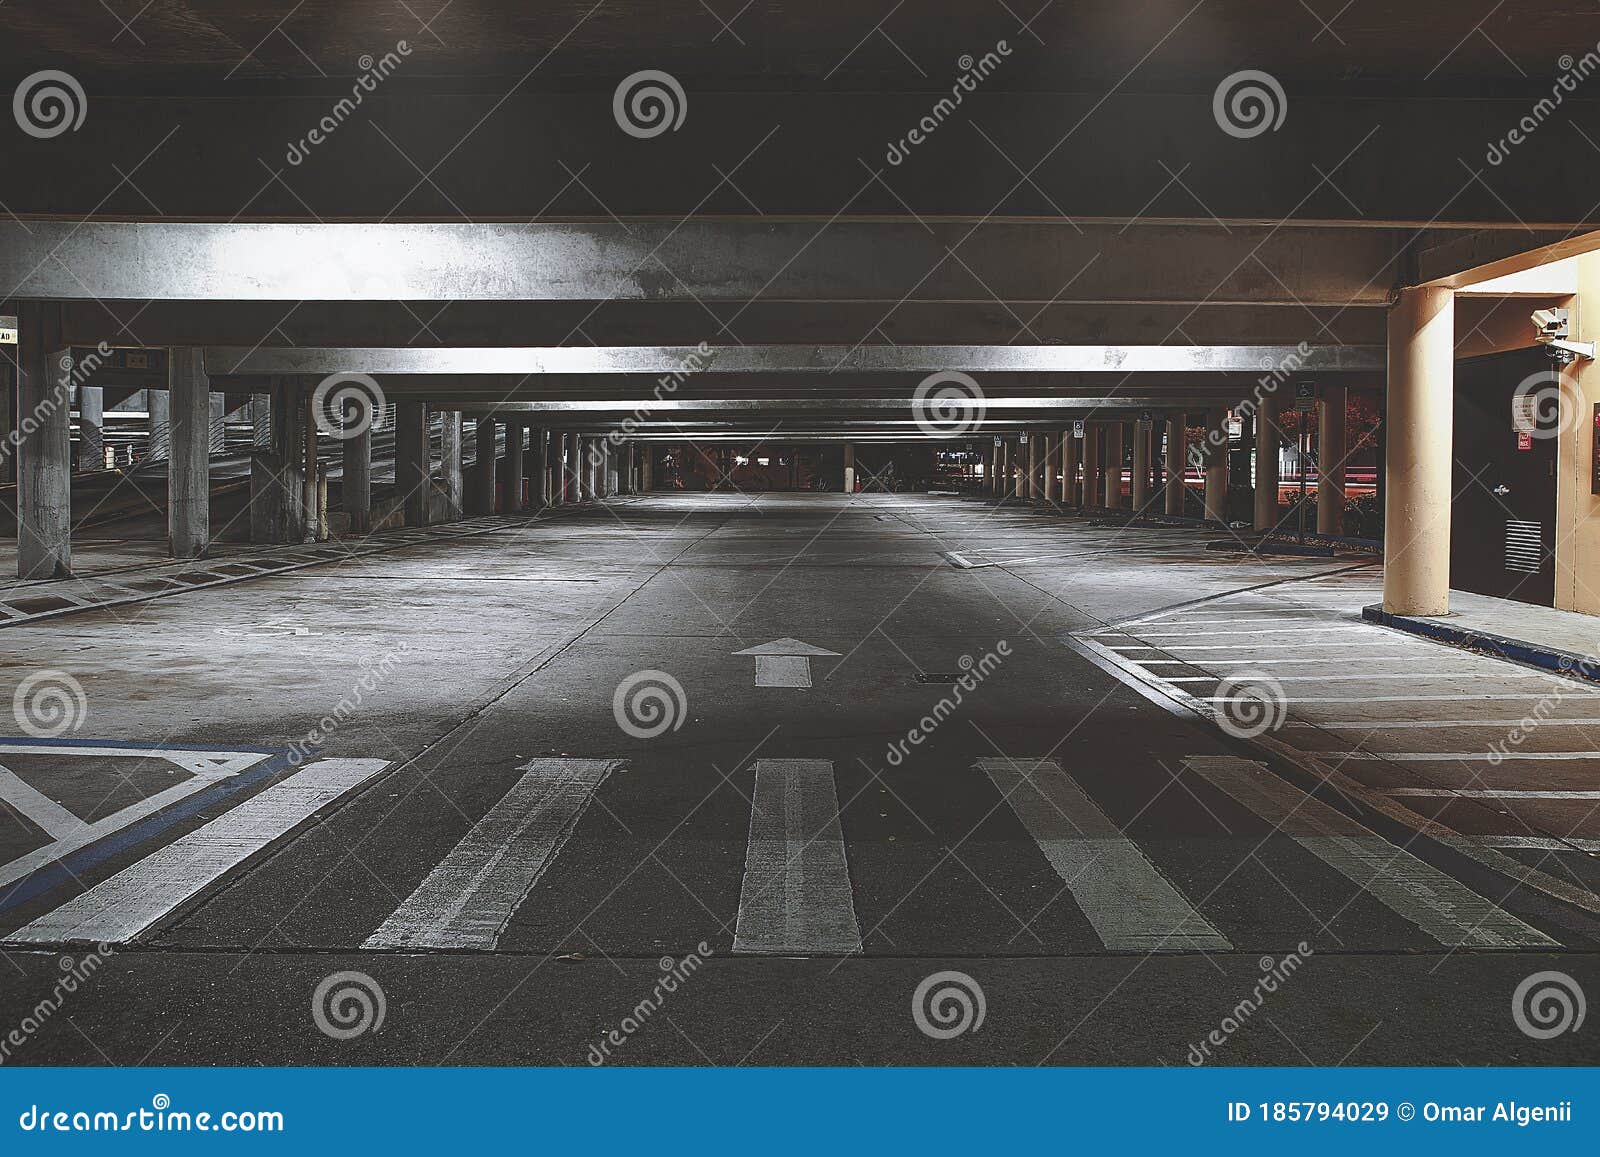 empty desolated abandoned underground carpark